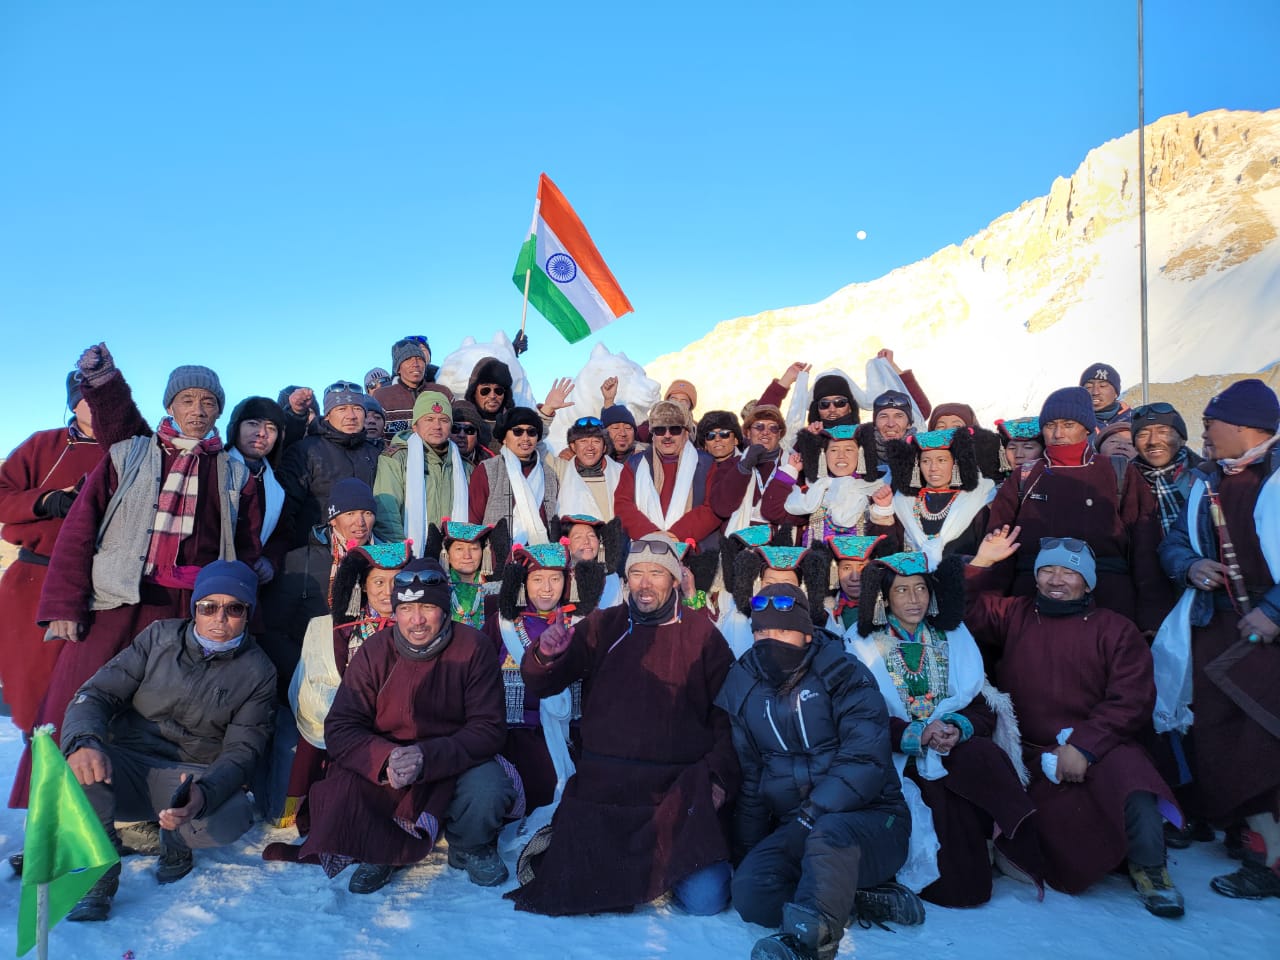 लद्दाख ने सर्वाधिक ऊंचाई पर गणतंत्र उत्सव मनाने का रिकार्ड बनाया